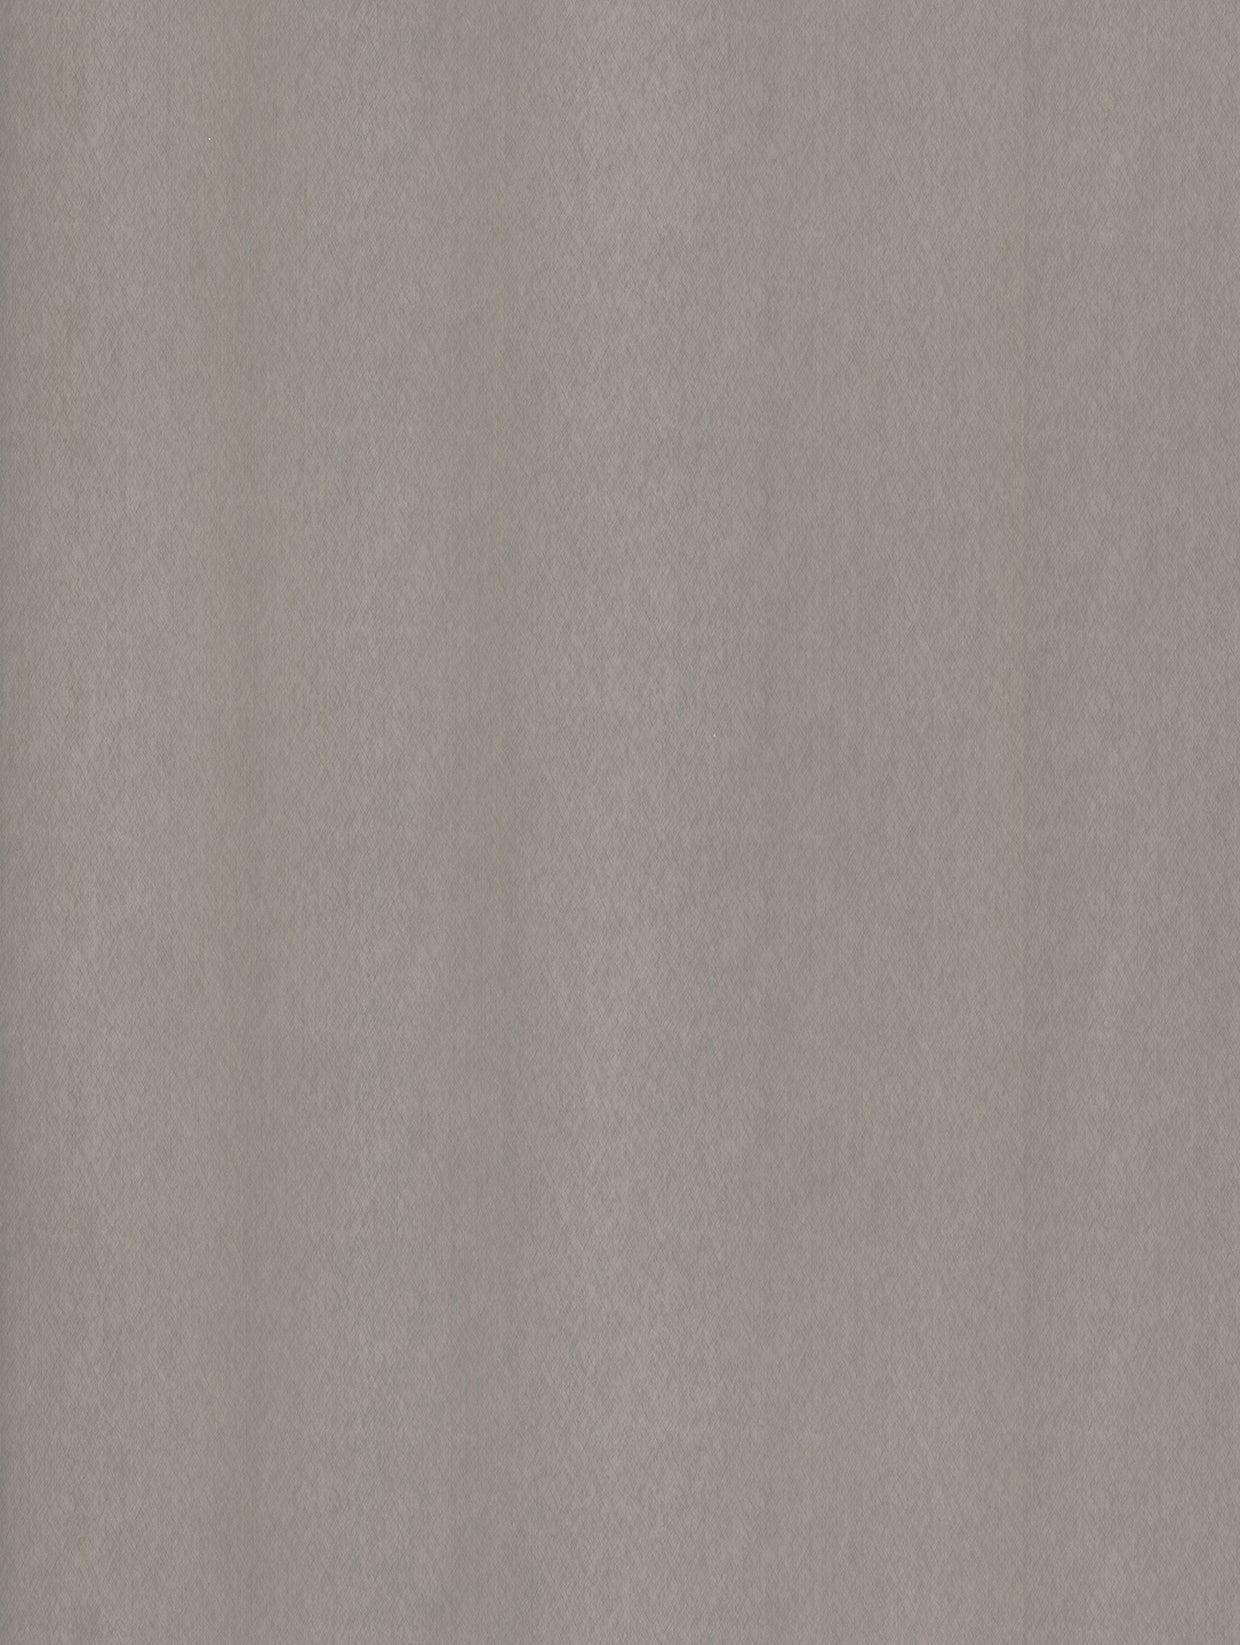 Steel-Brushed | Metalldekor Gebürstet Texturiert - Möbelfolie Selbstklebende Tapete Vinyl Folie für Möbel Wand Regal (100x122cm)